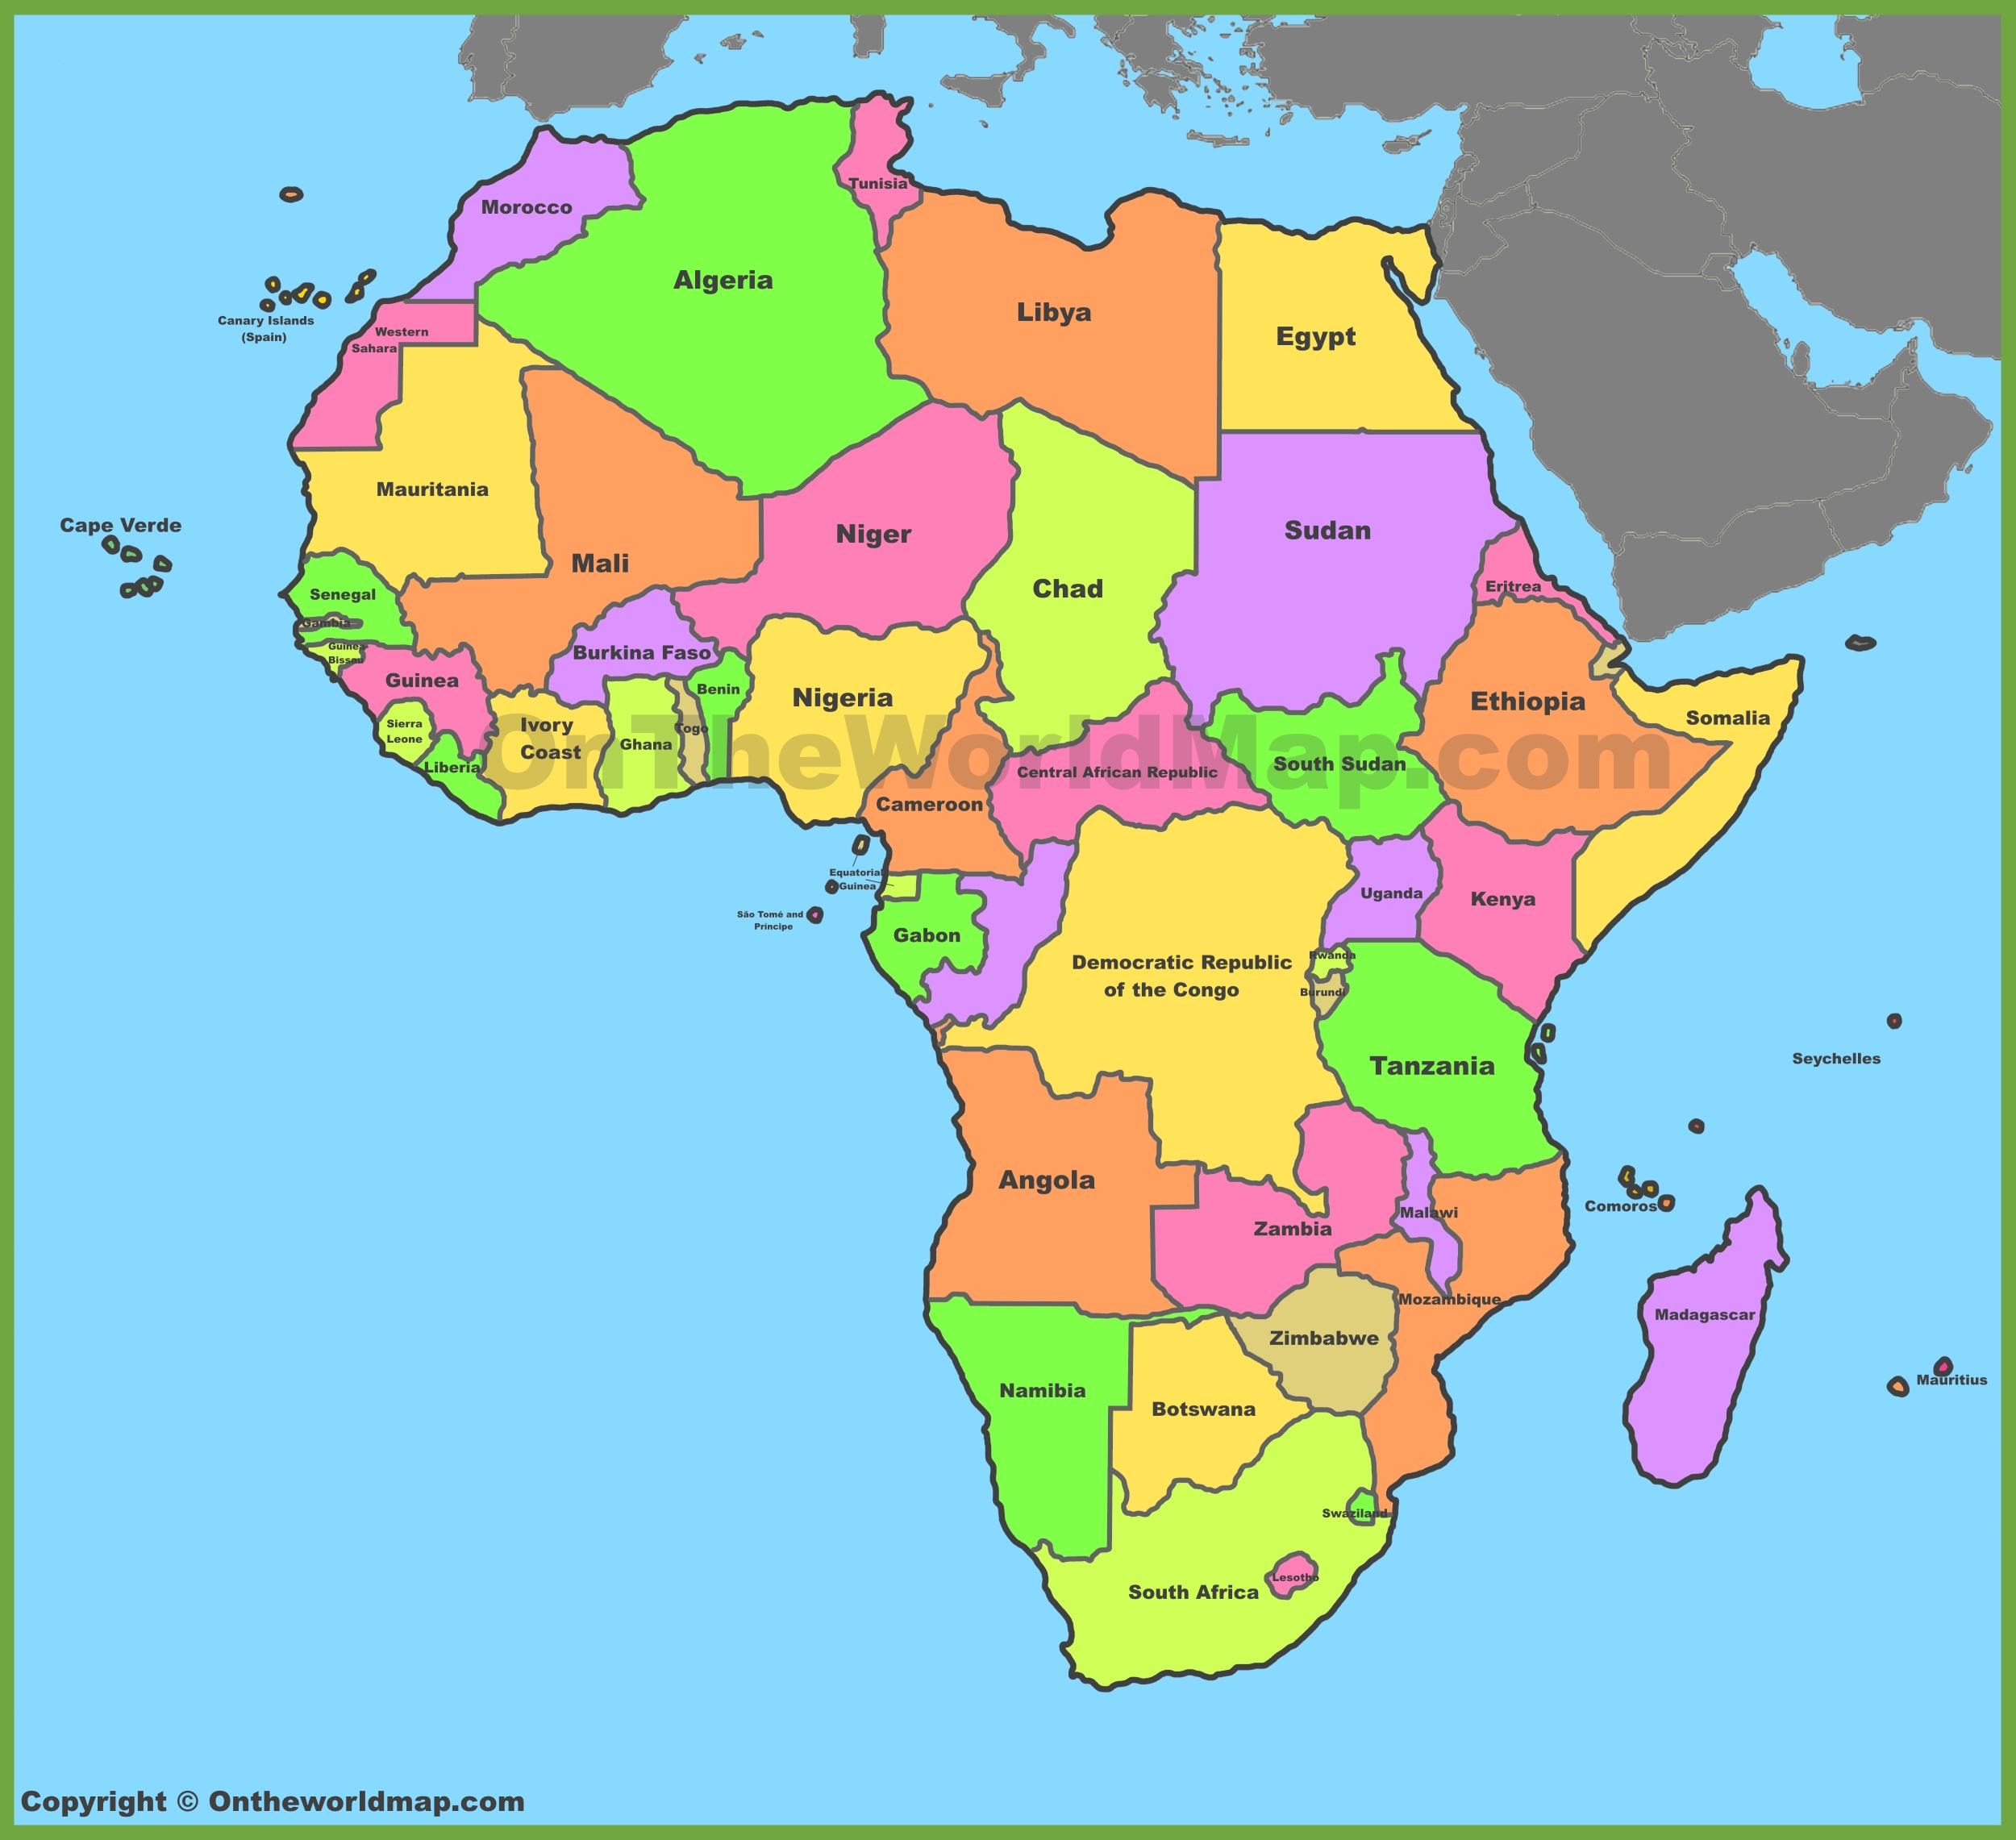 Hãy đặt chân đến đại lục đen và khám phá với bản đồ Châu Phi tổng quan. Bạn sẽ thấy ngay được sự đa dạng và phong phú trong danh lam thắng cảnh, lịch sử và văn hóa.